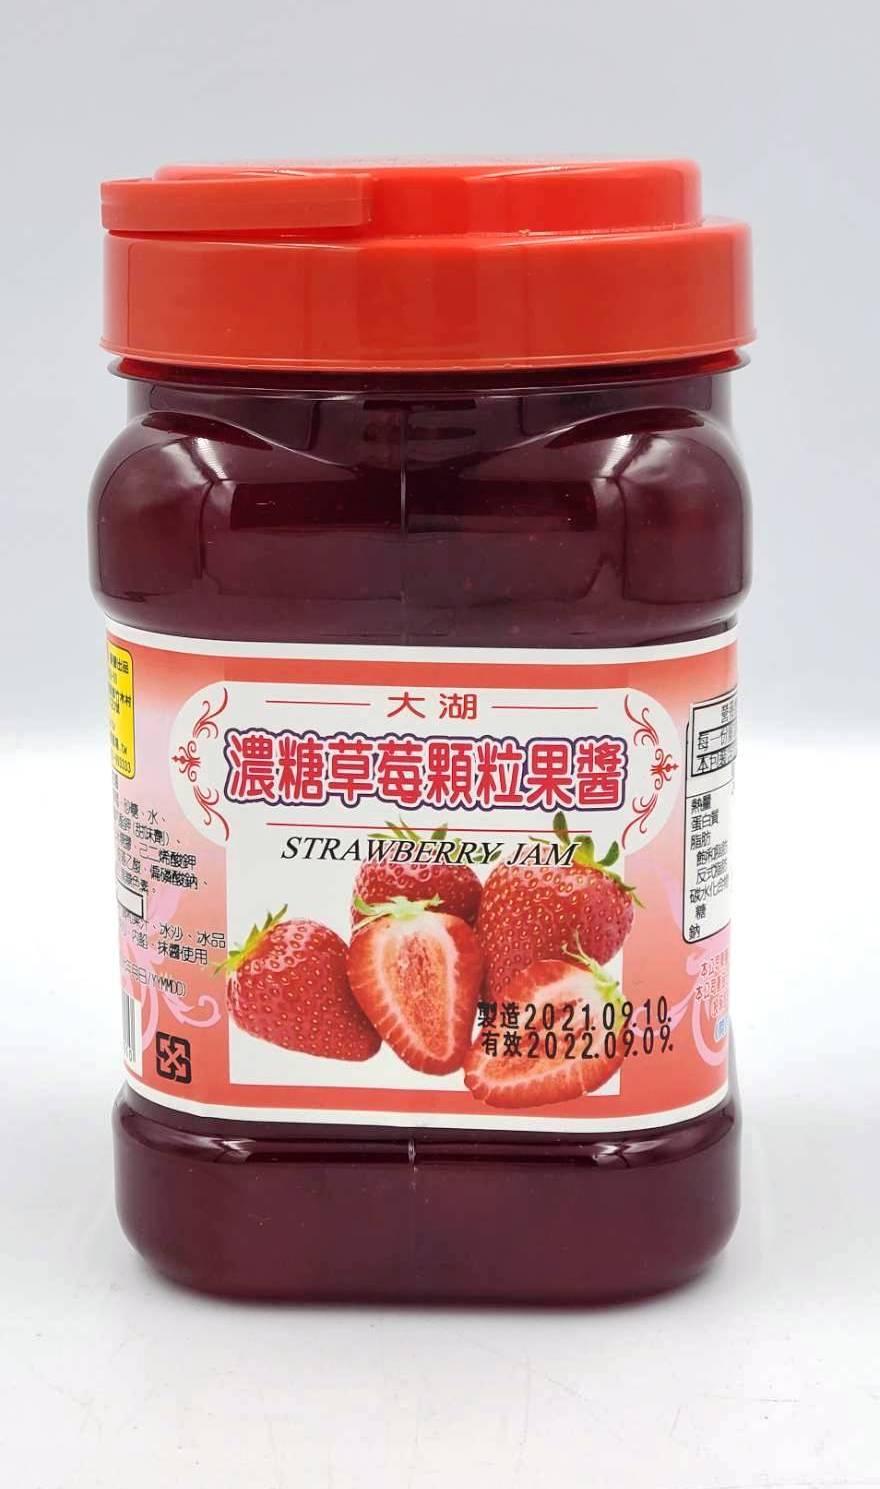 【168all】 1.1KG果粒醬(有果粒)：草莓 / 百香果 / 烏梅 / 鳳梨 / 桑椹